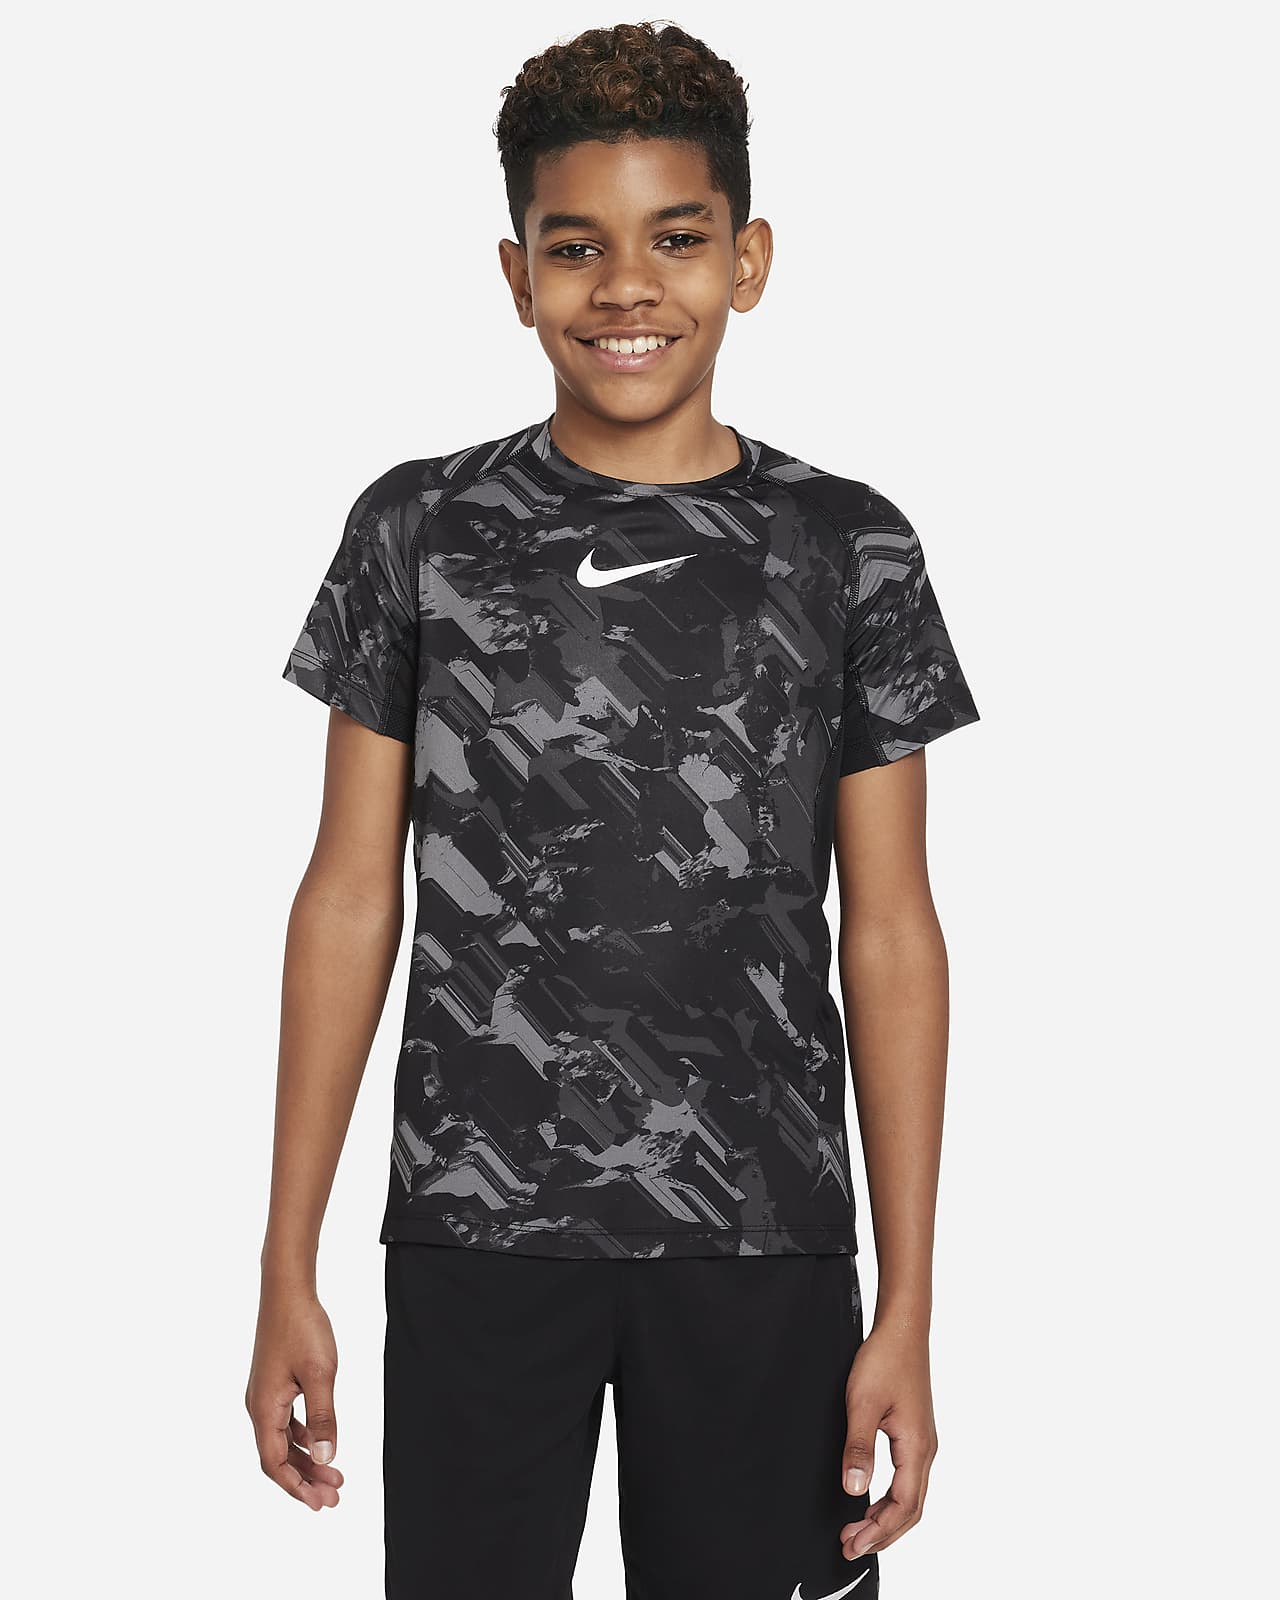 sfære farligt Advarsel Nike Pro Dri-FIT-træningsoverdel til større børn (drenge). Nike DK